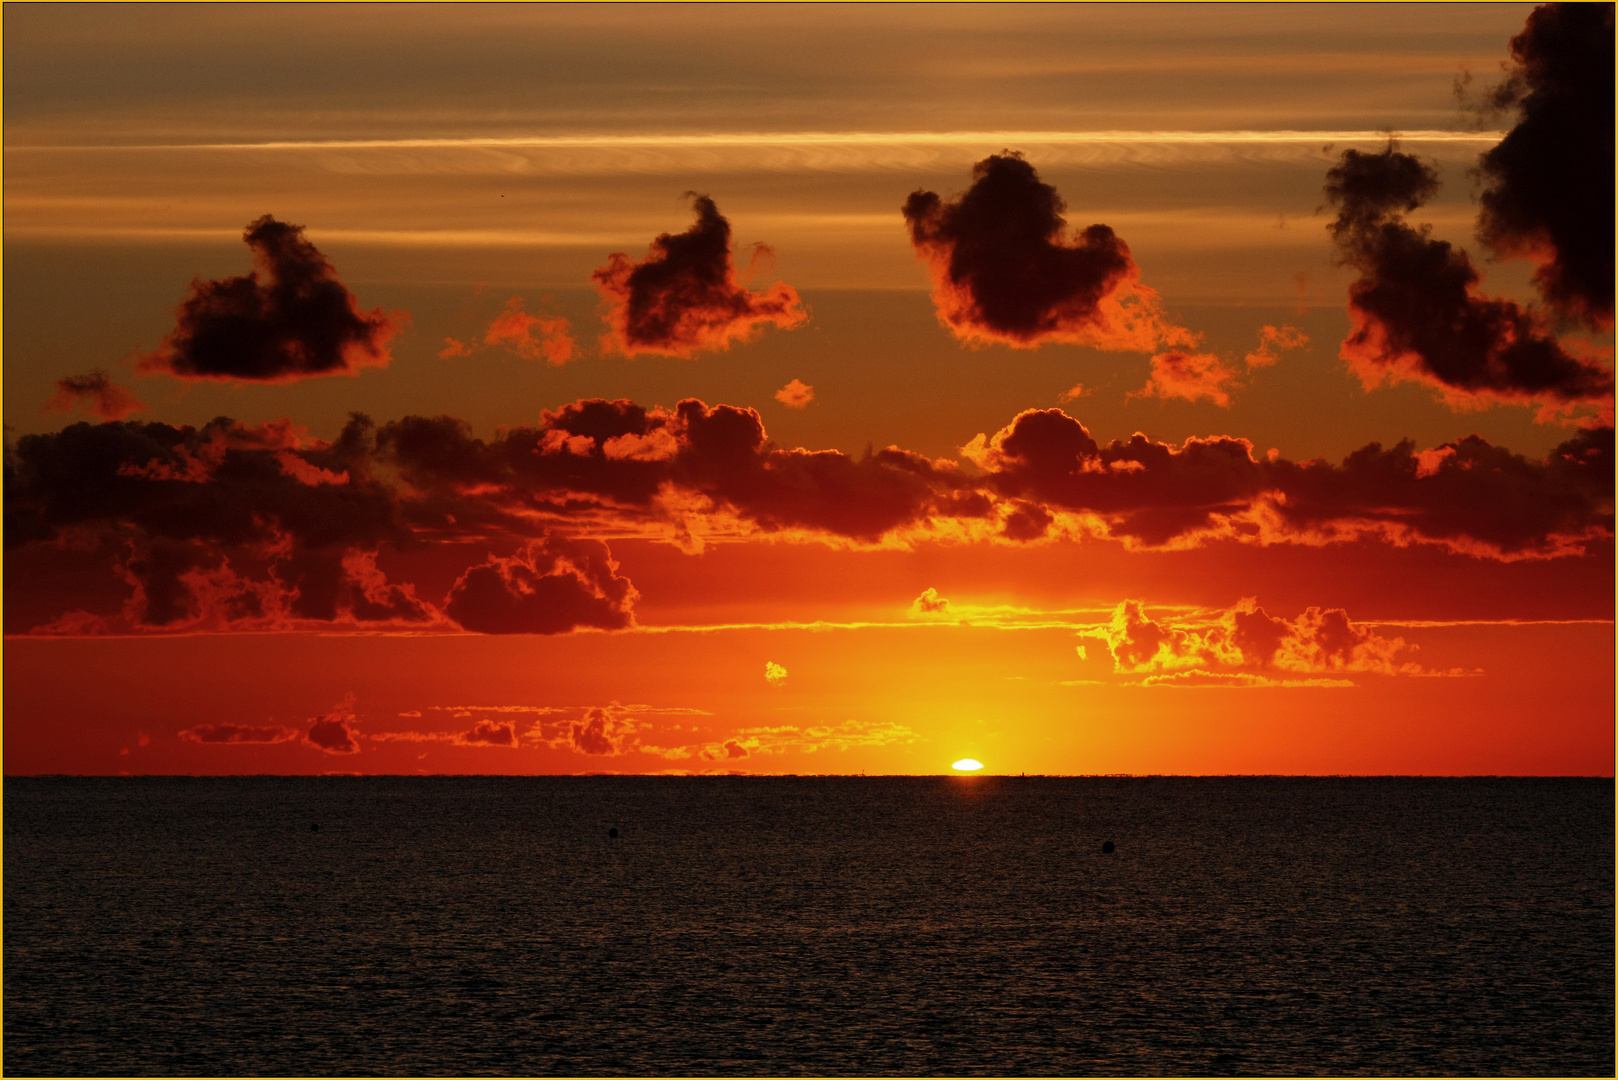 Sonnenaufgang an der Ostsee